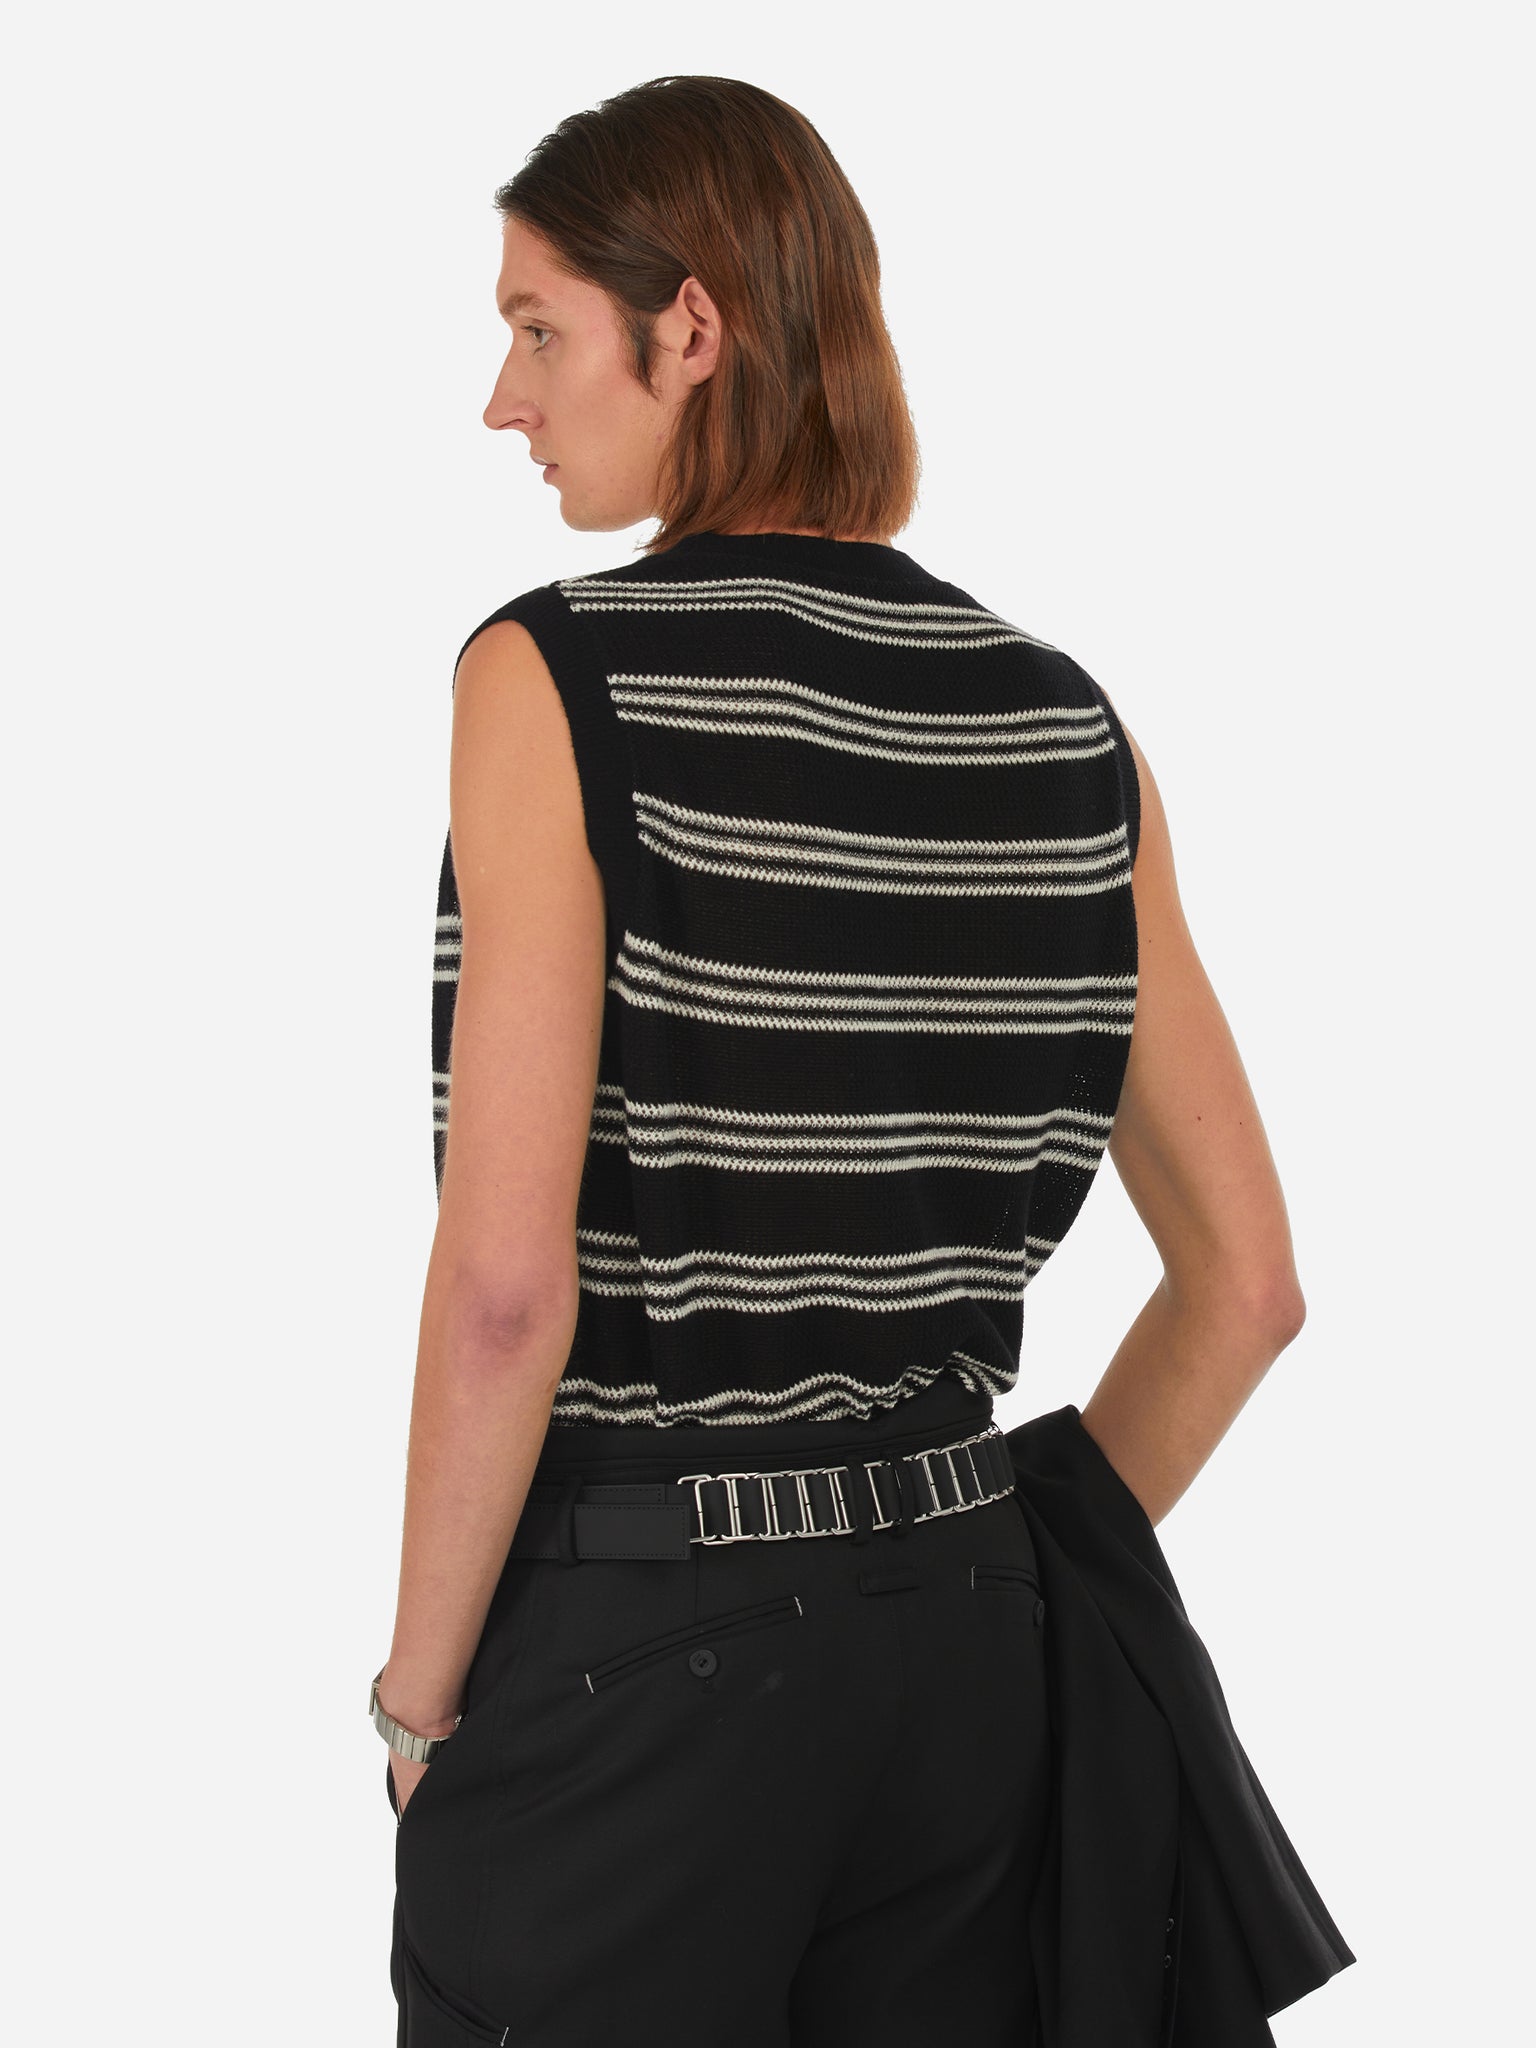 【c2h4】007 - Louver Knit Vest